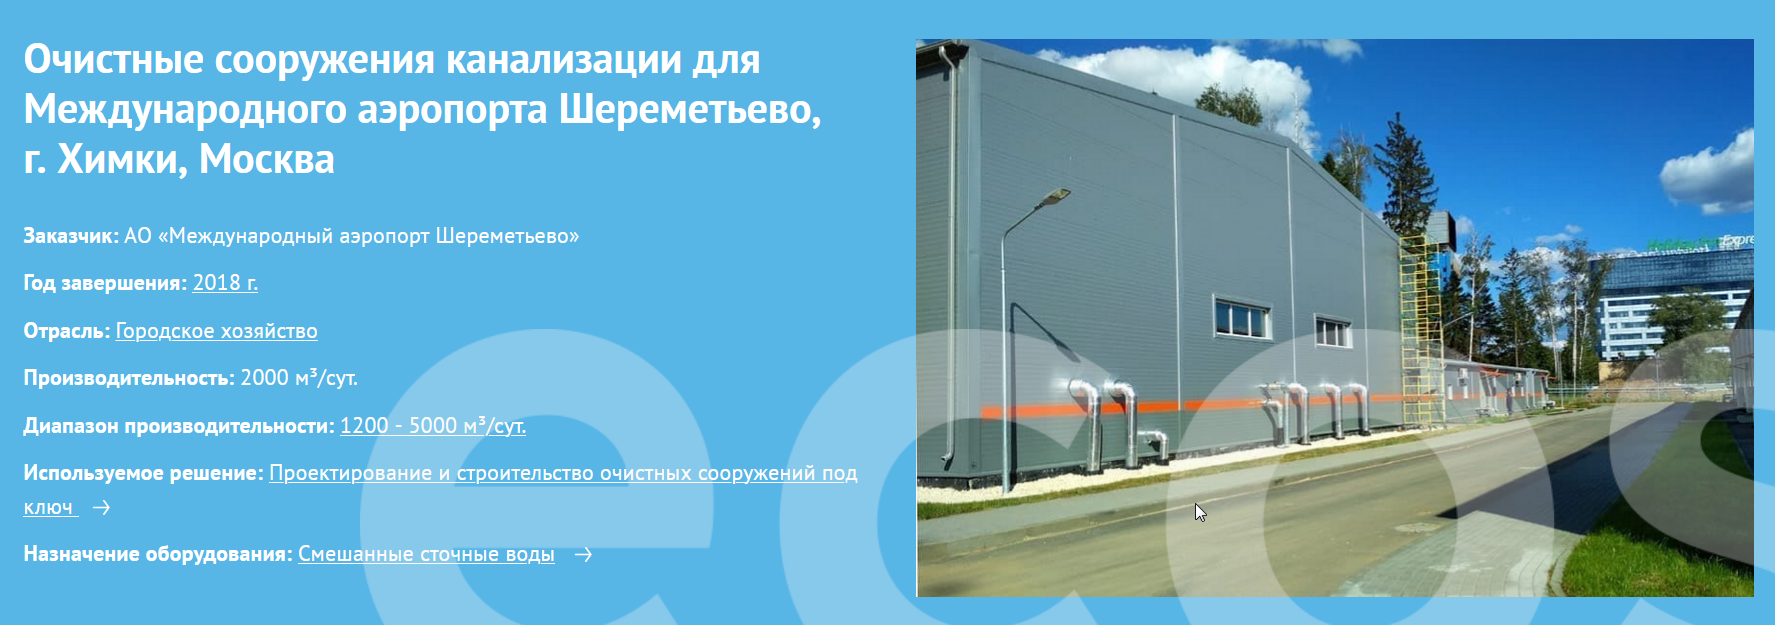 Очистные сооружения канализации для Международного аэропорта Шереметьево, г. Химки, Москва